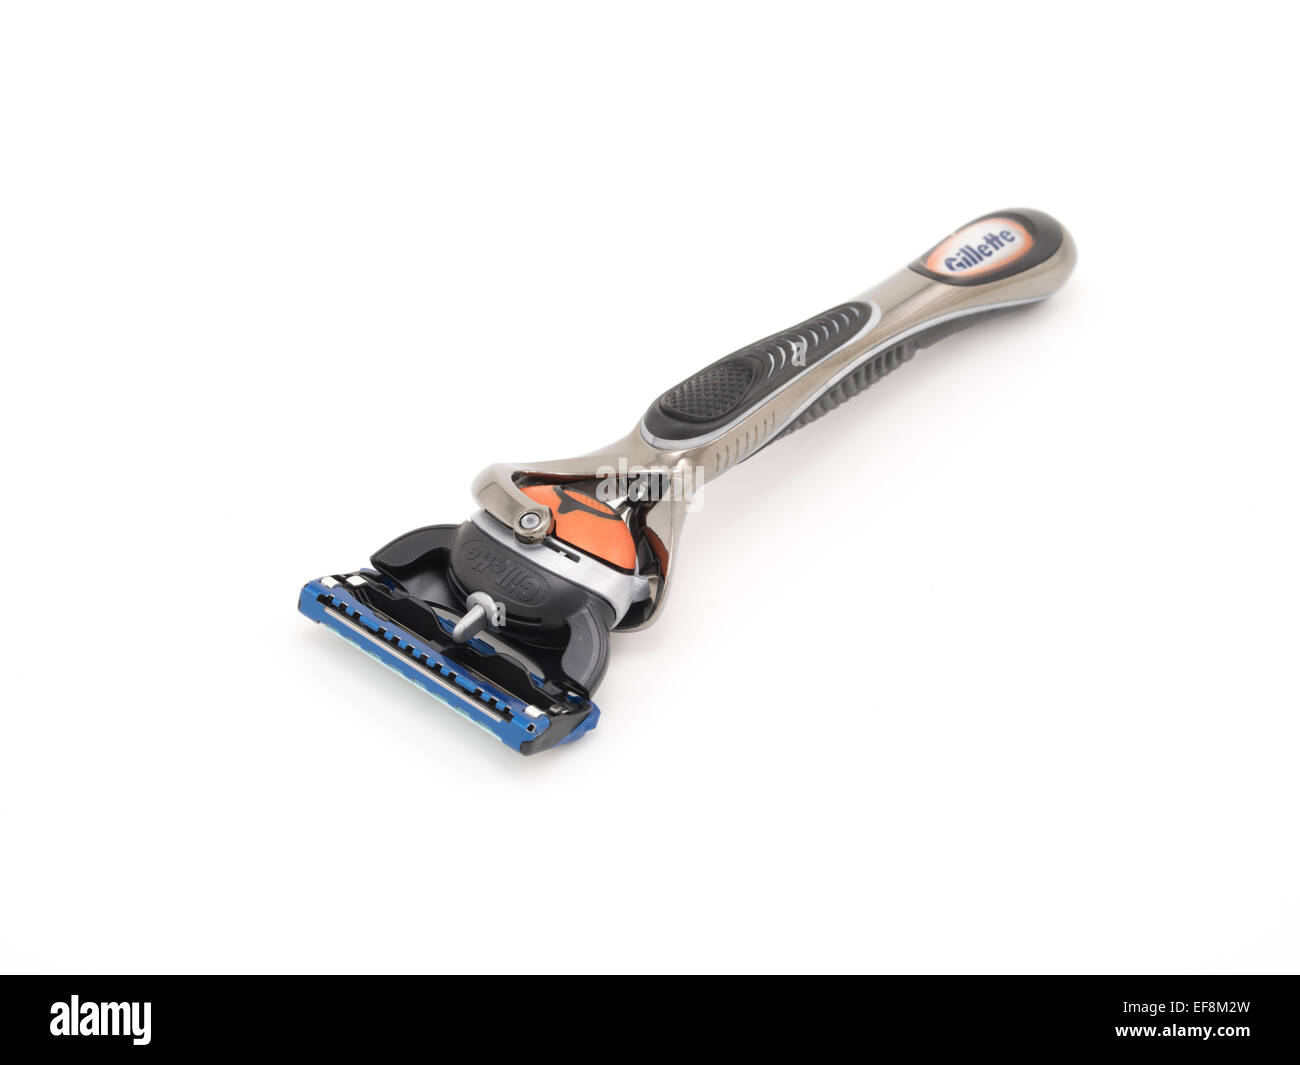 Gillette Fusion Proglide máquina de afeitar desechable con Flexball para afeitar / Grooming Masculino Foto de stock